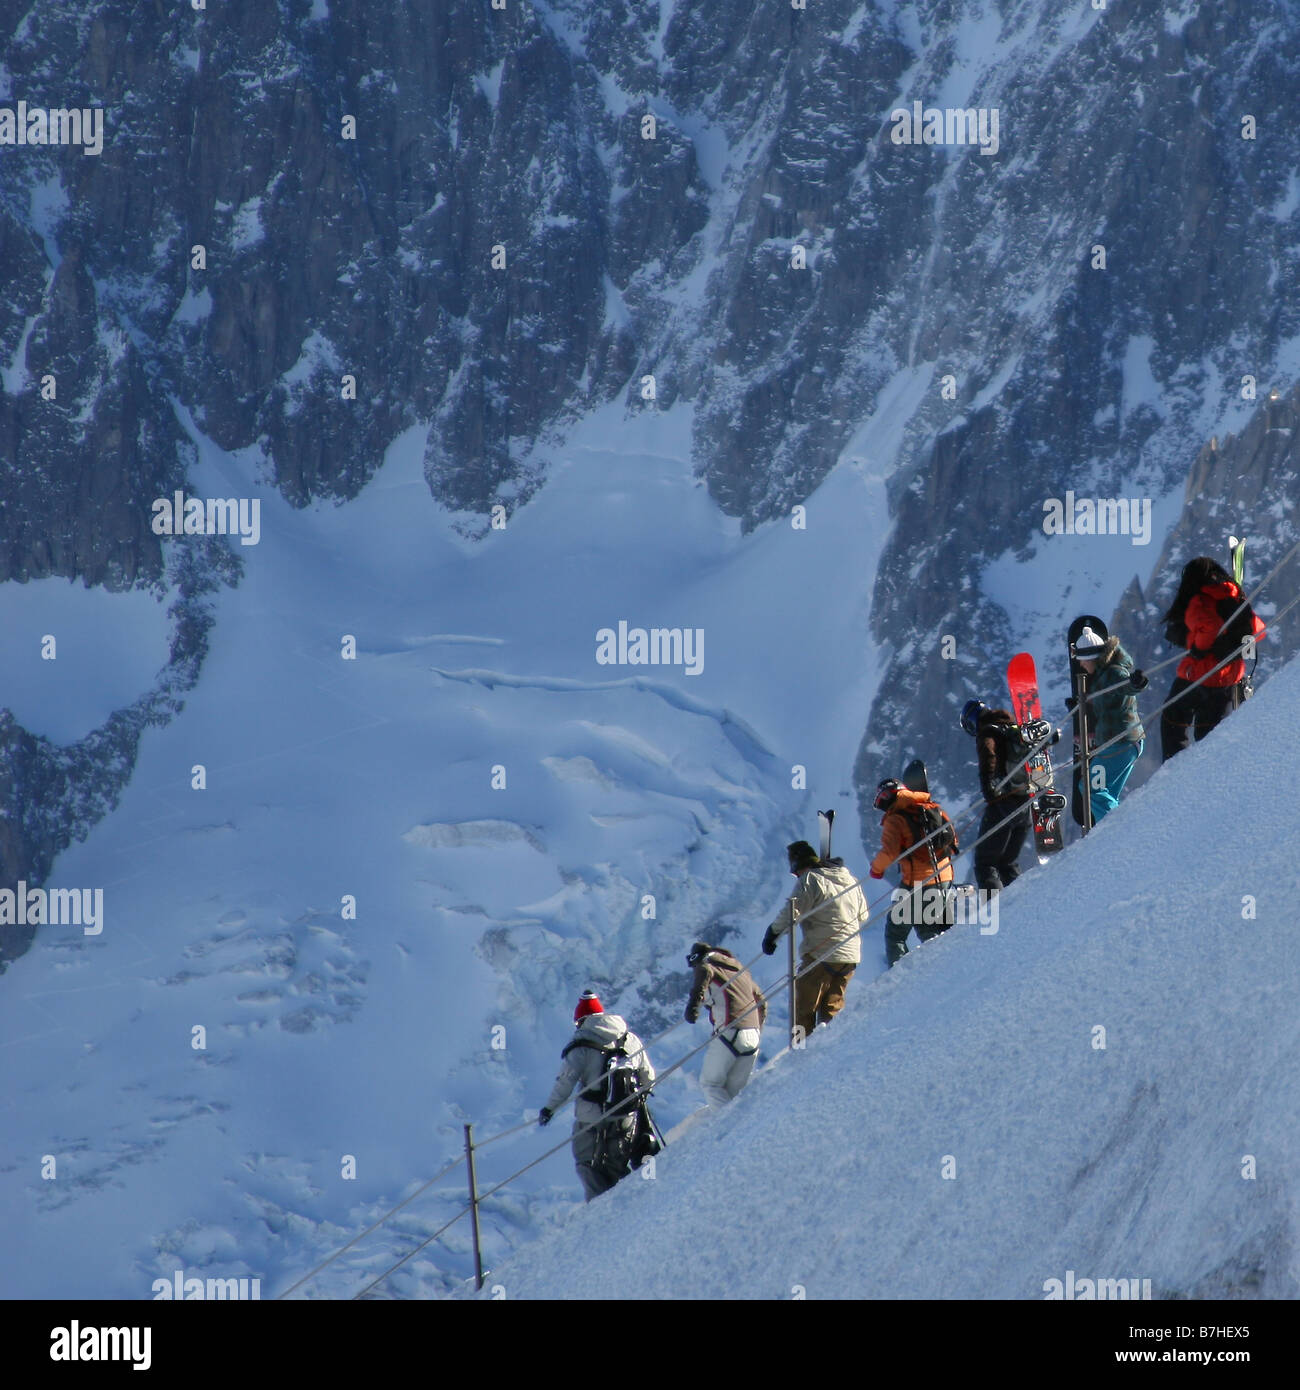 Les skieurs et planchistes font leur chemin vers le bas l'arete de glace, le début de la célèbre Vallée Blanche Chamonix off-piste Banque D'Images